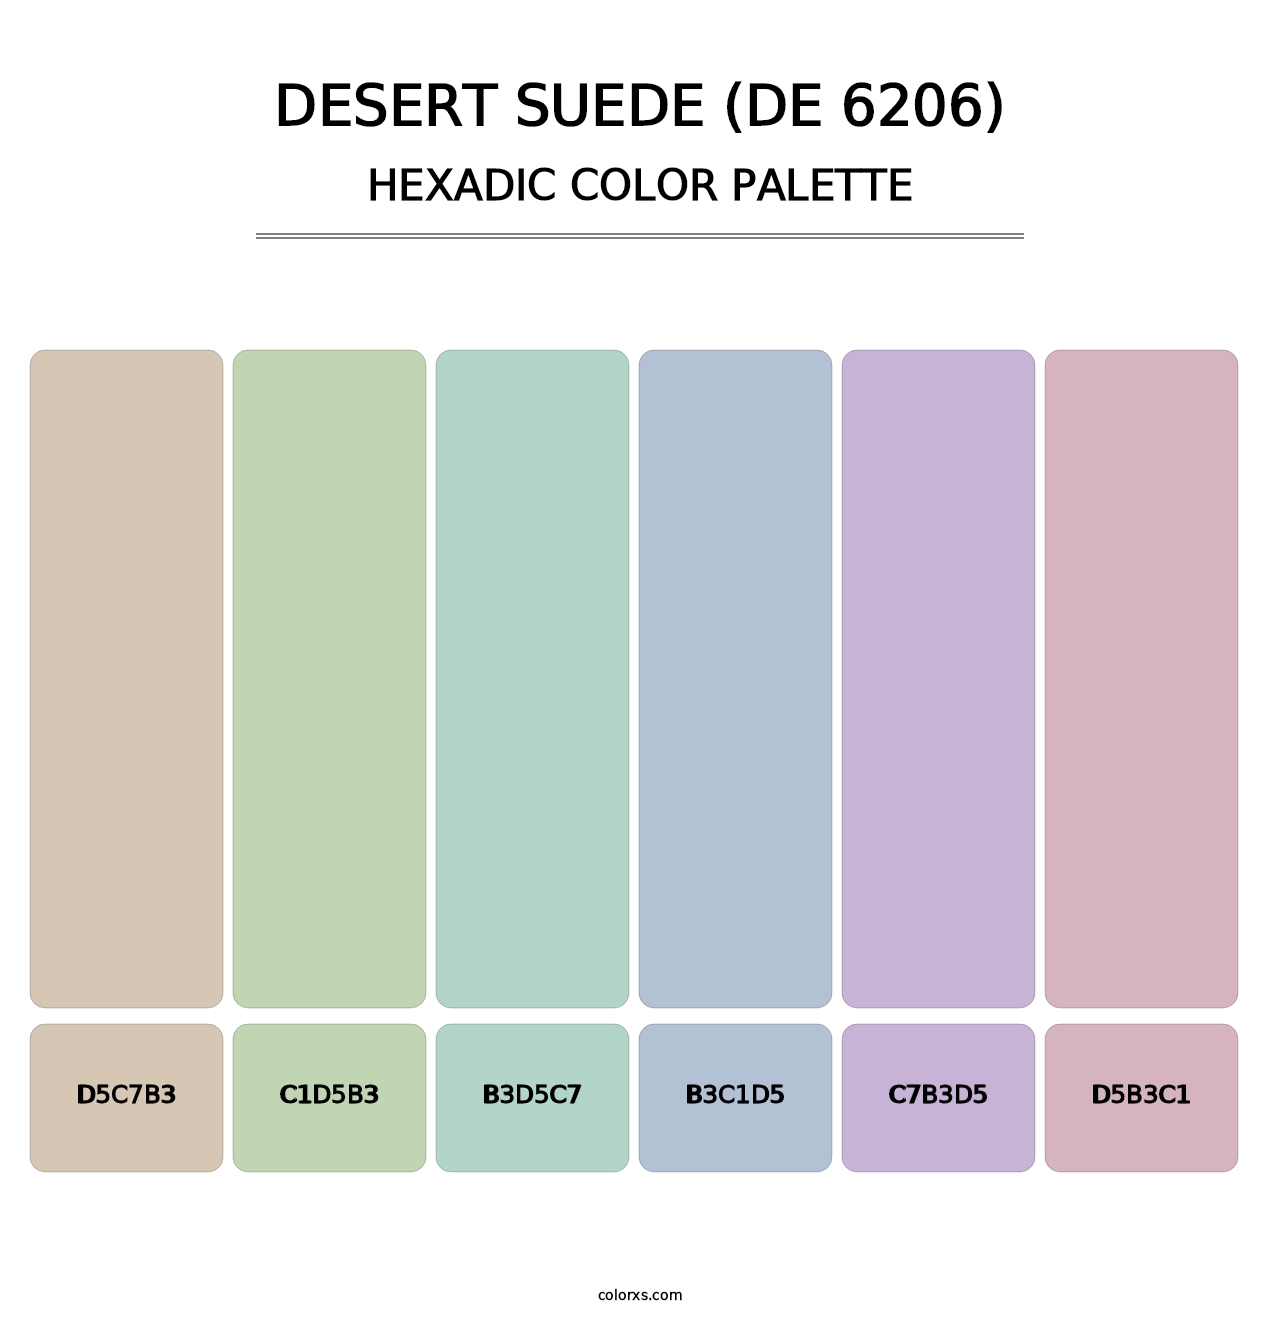 Desert Suede (DE 6206) - Hexadic Color Palette